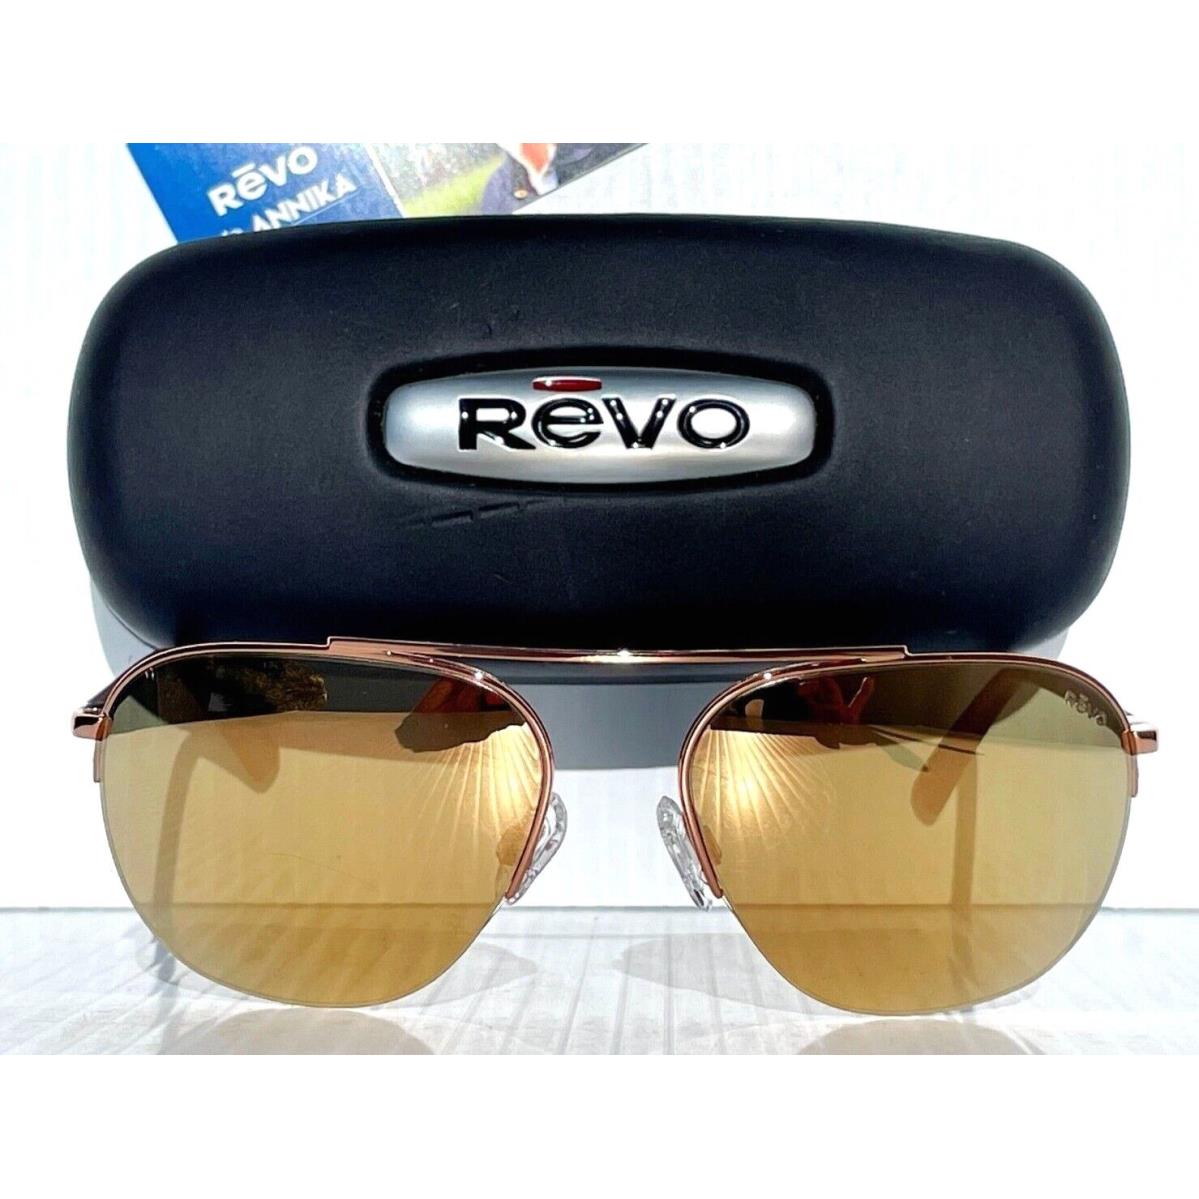 Revo sunglasses Annika - Rose Gold Frame, Gold Lens